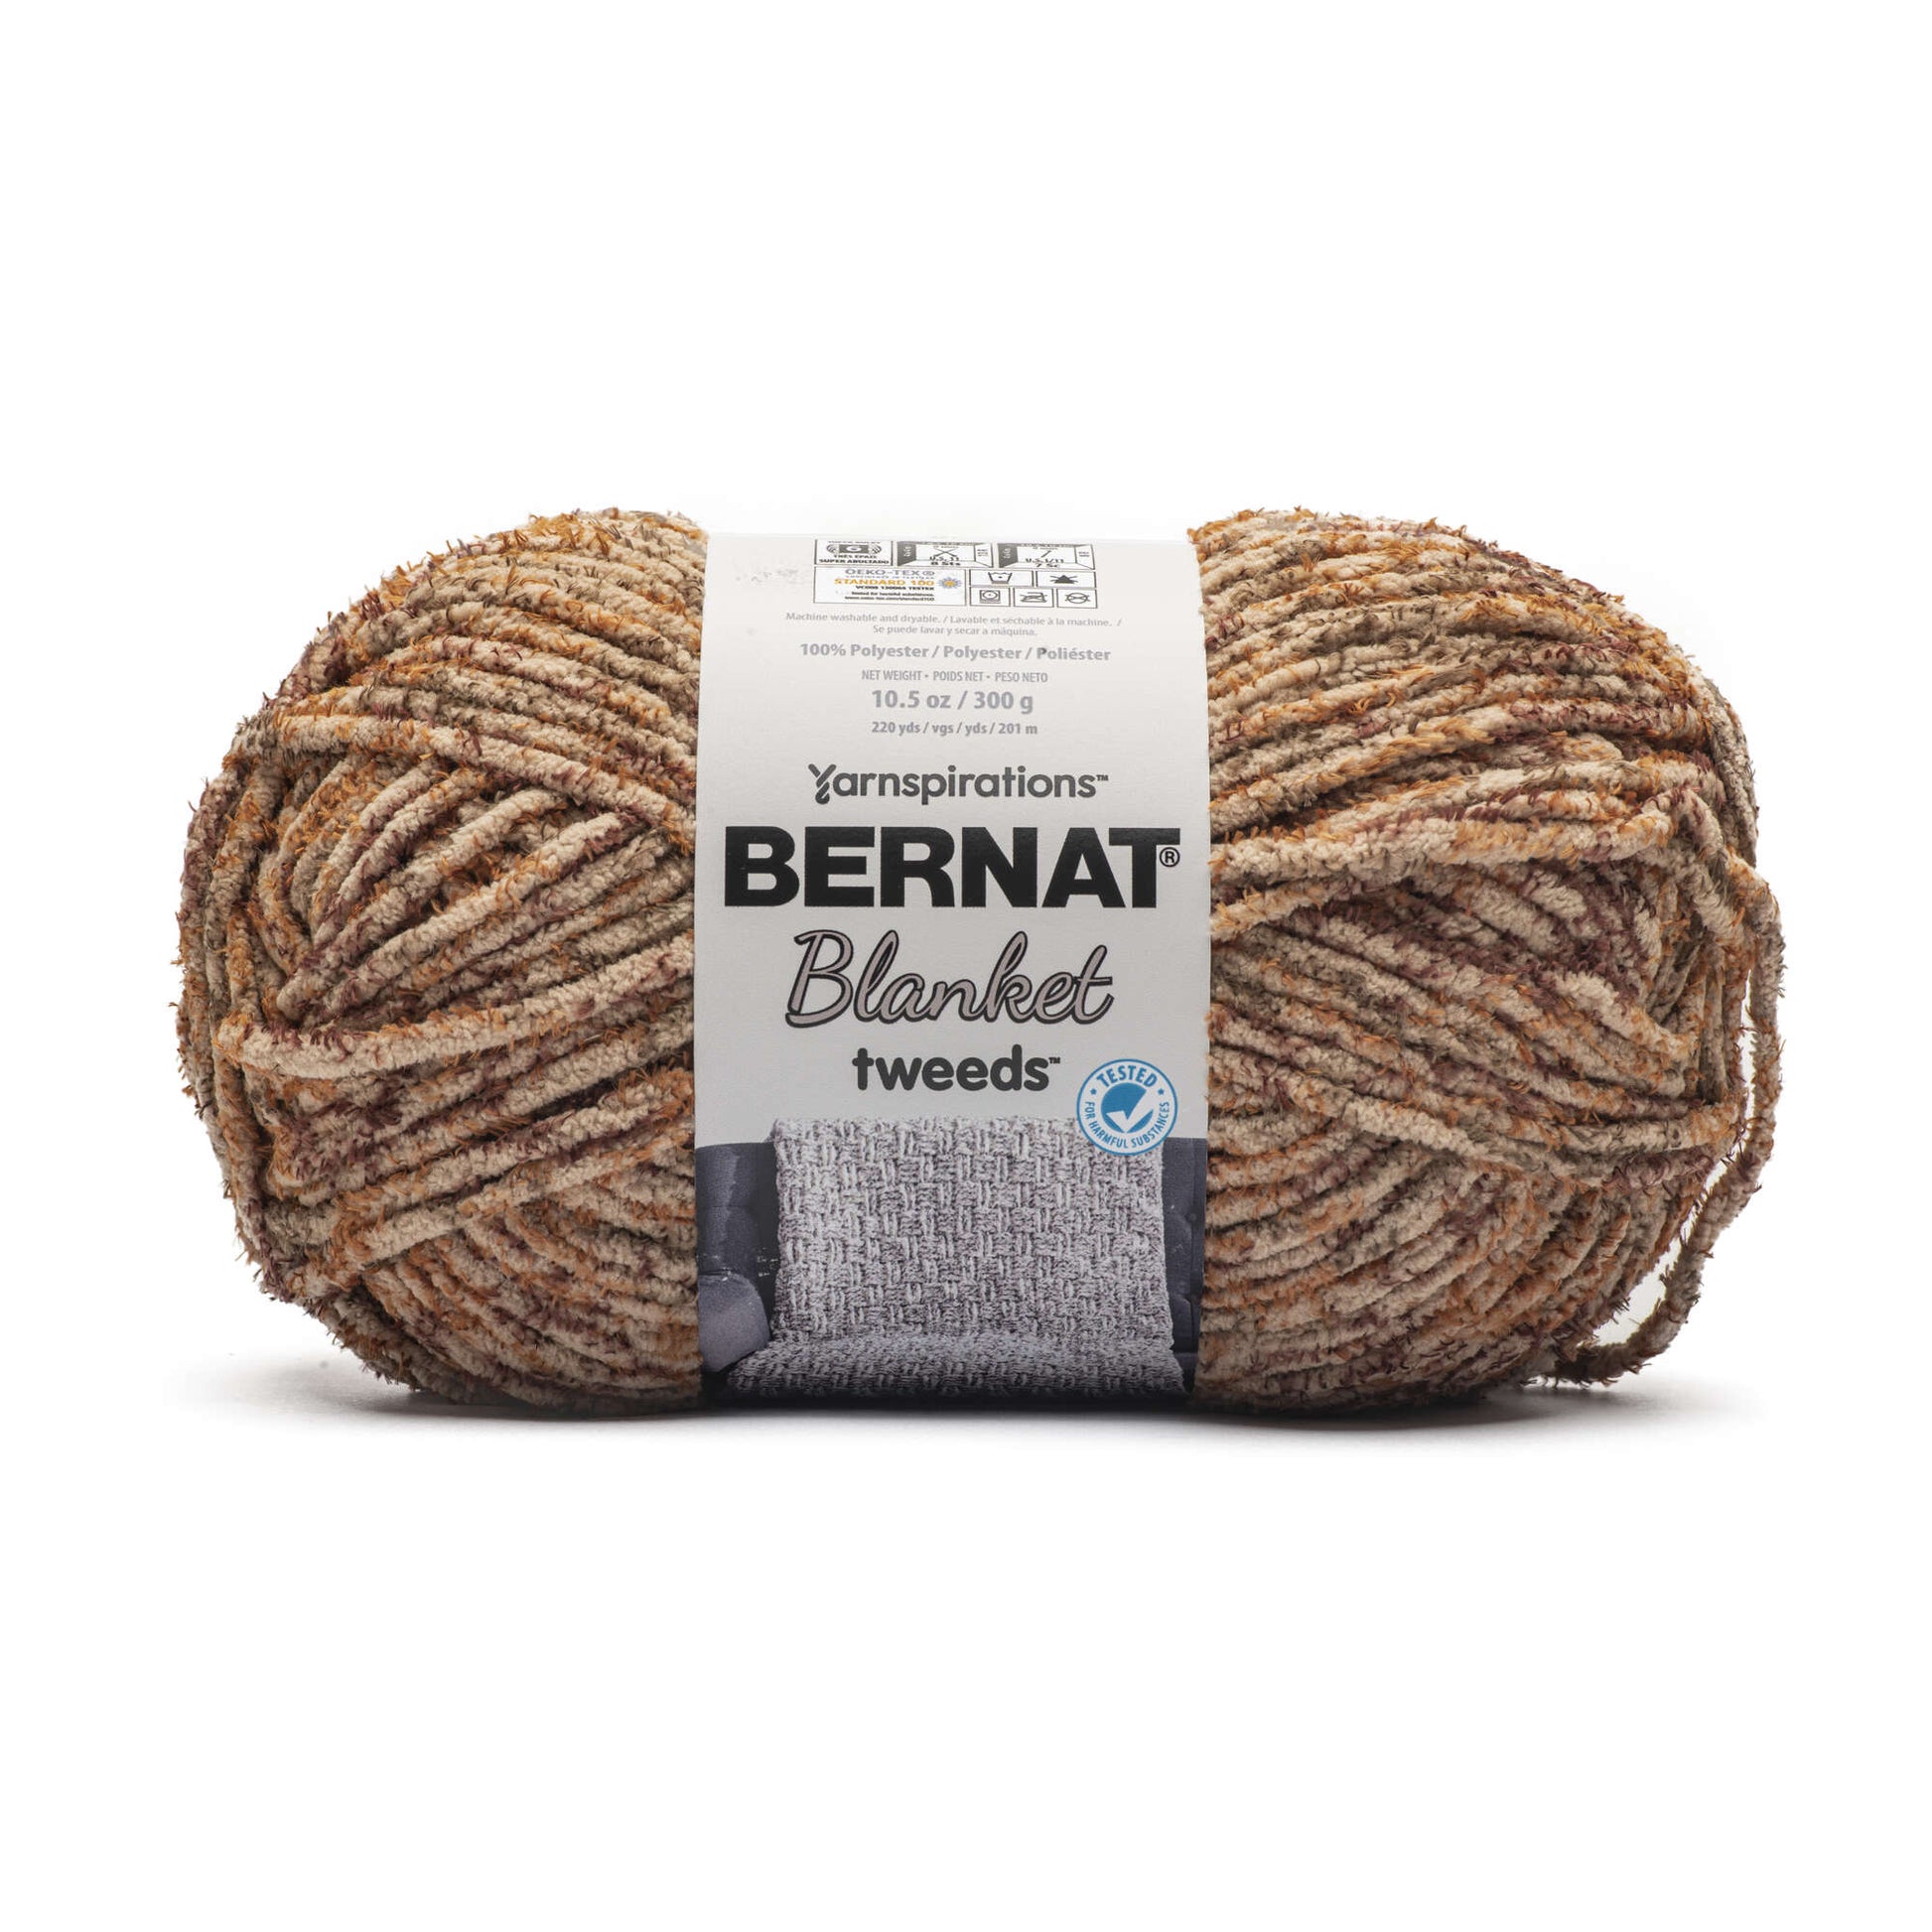 Bernat Blanket Tweeds Yarn (300g/10.5oz)